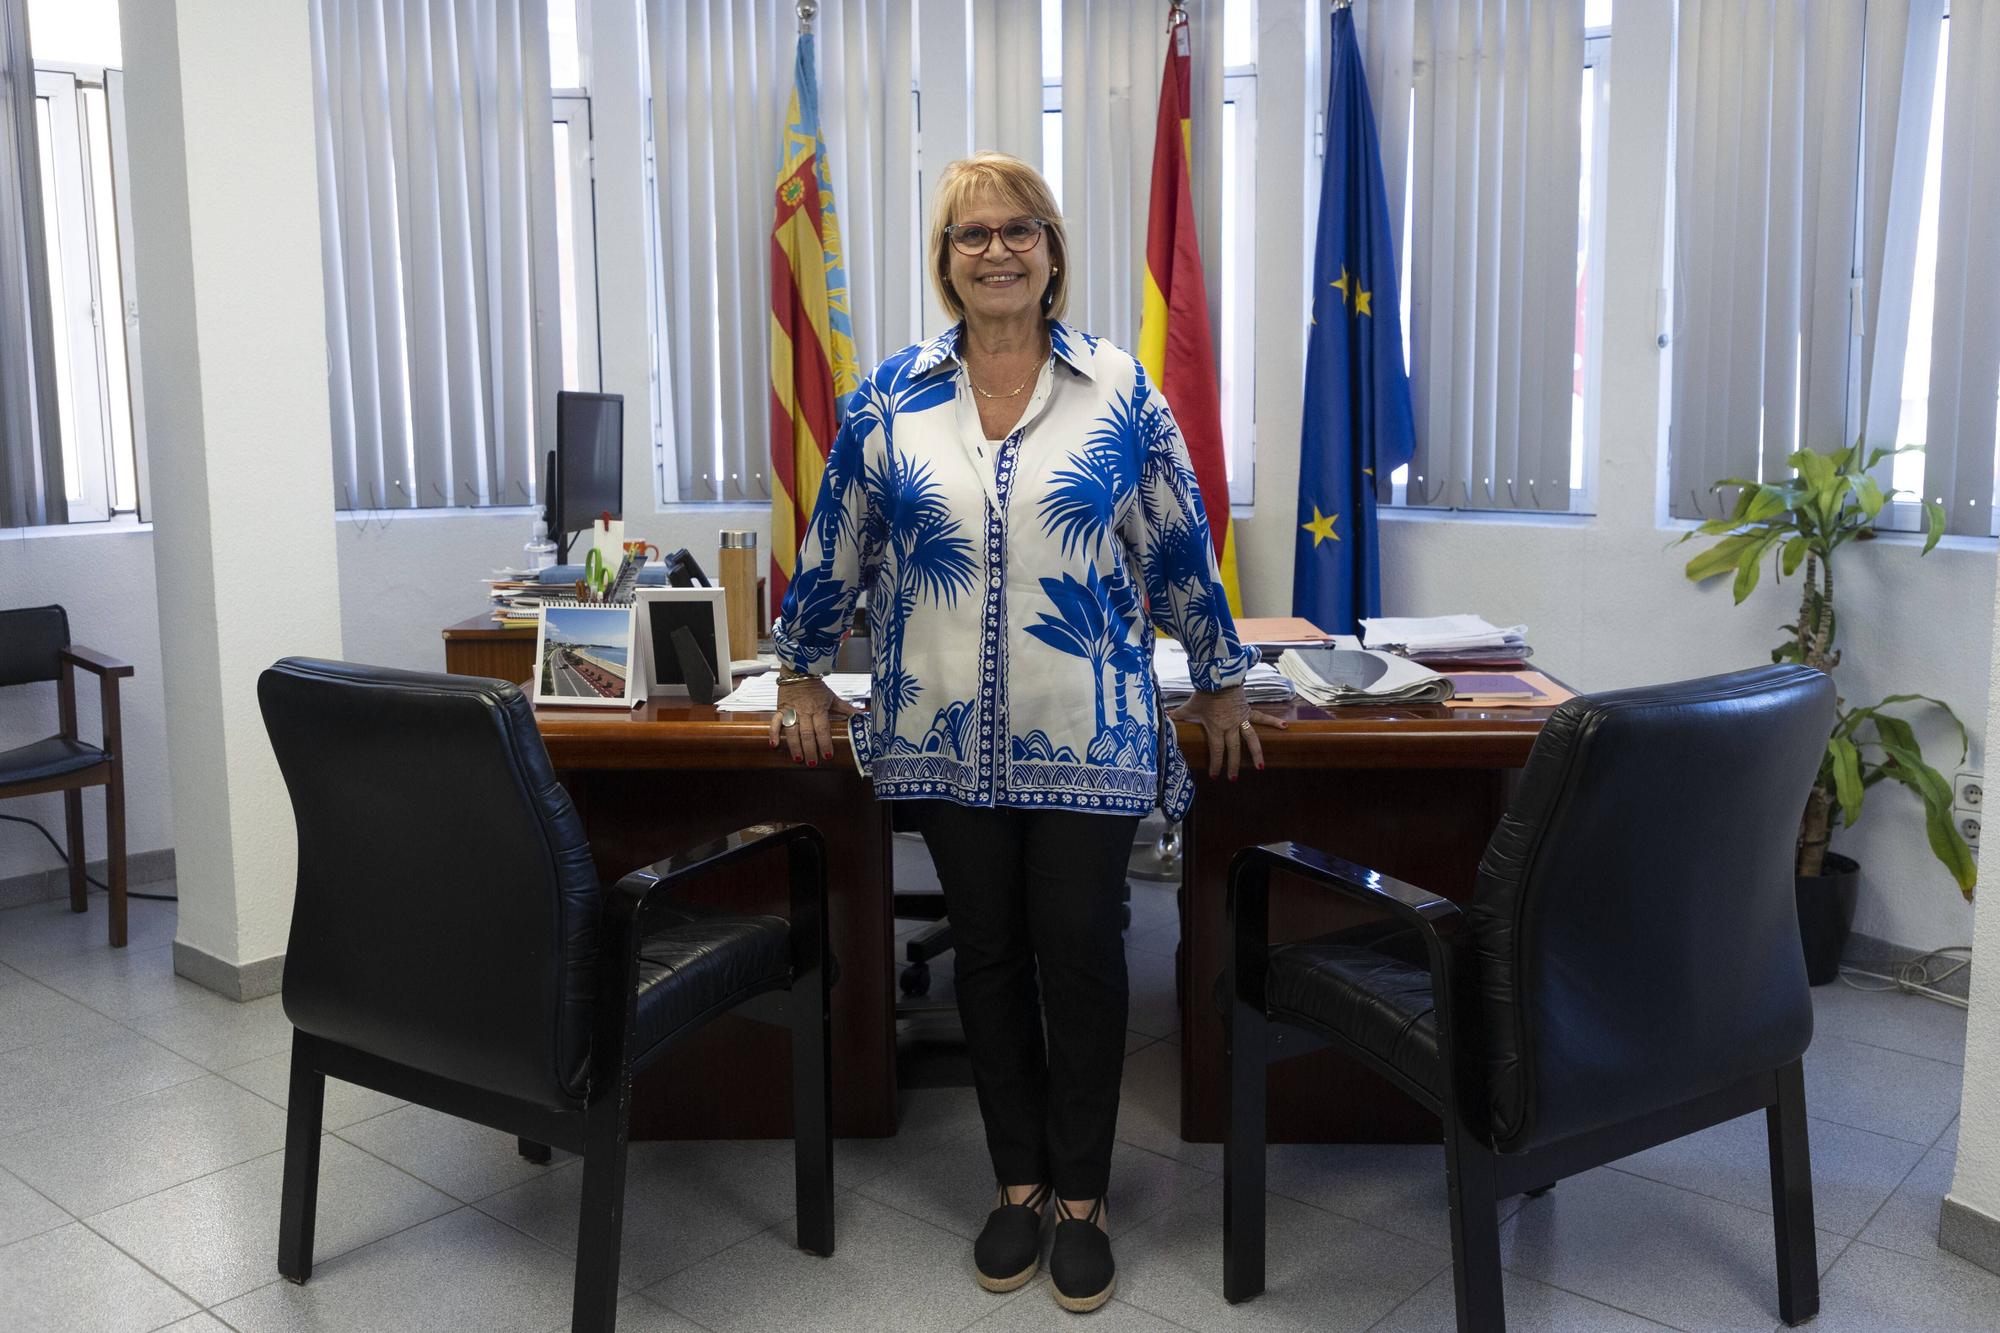 Entrevista a Conxa GaArcia, alcaldesa de Picassent.